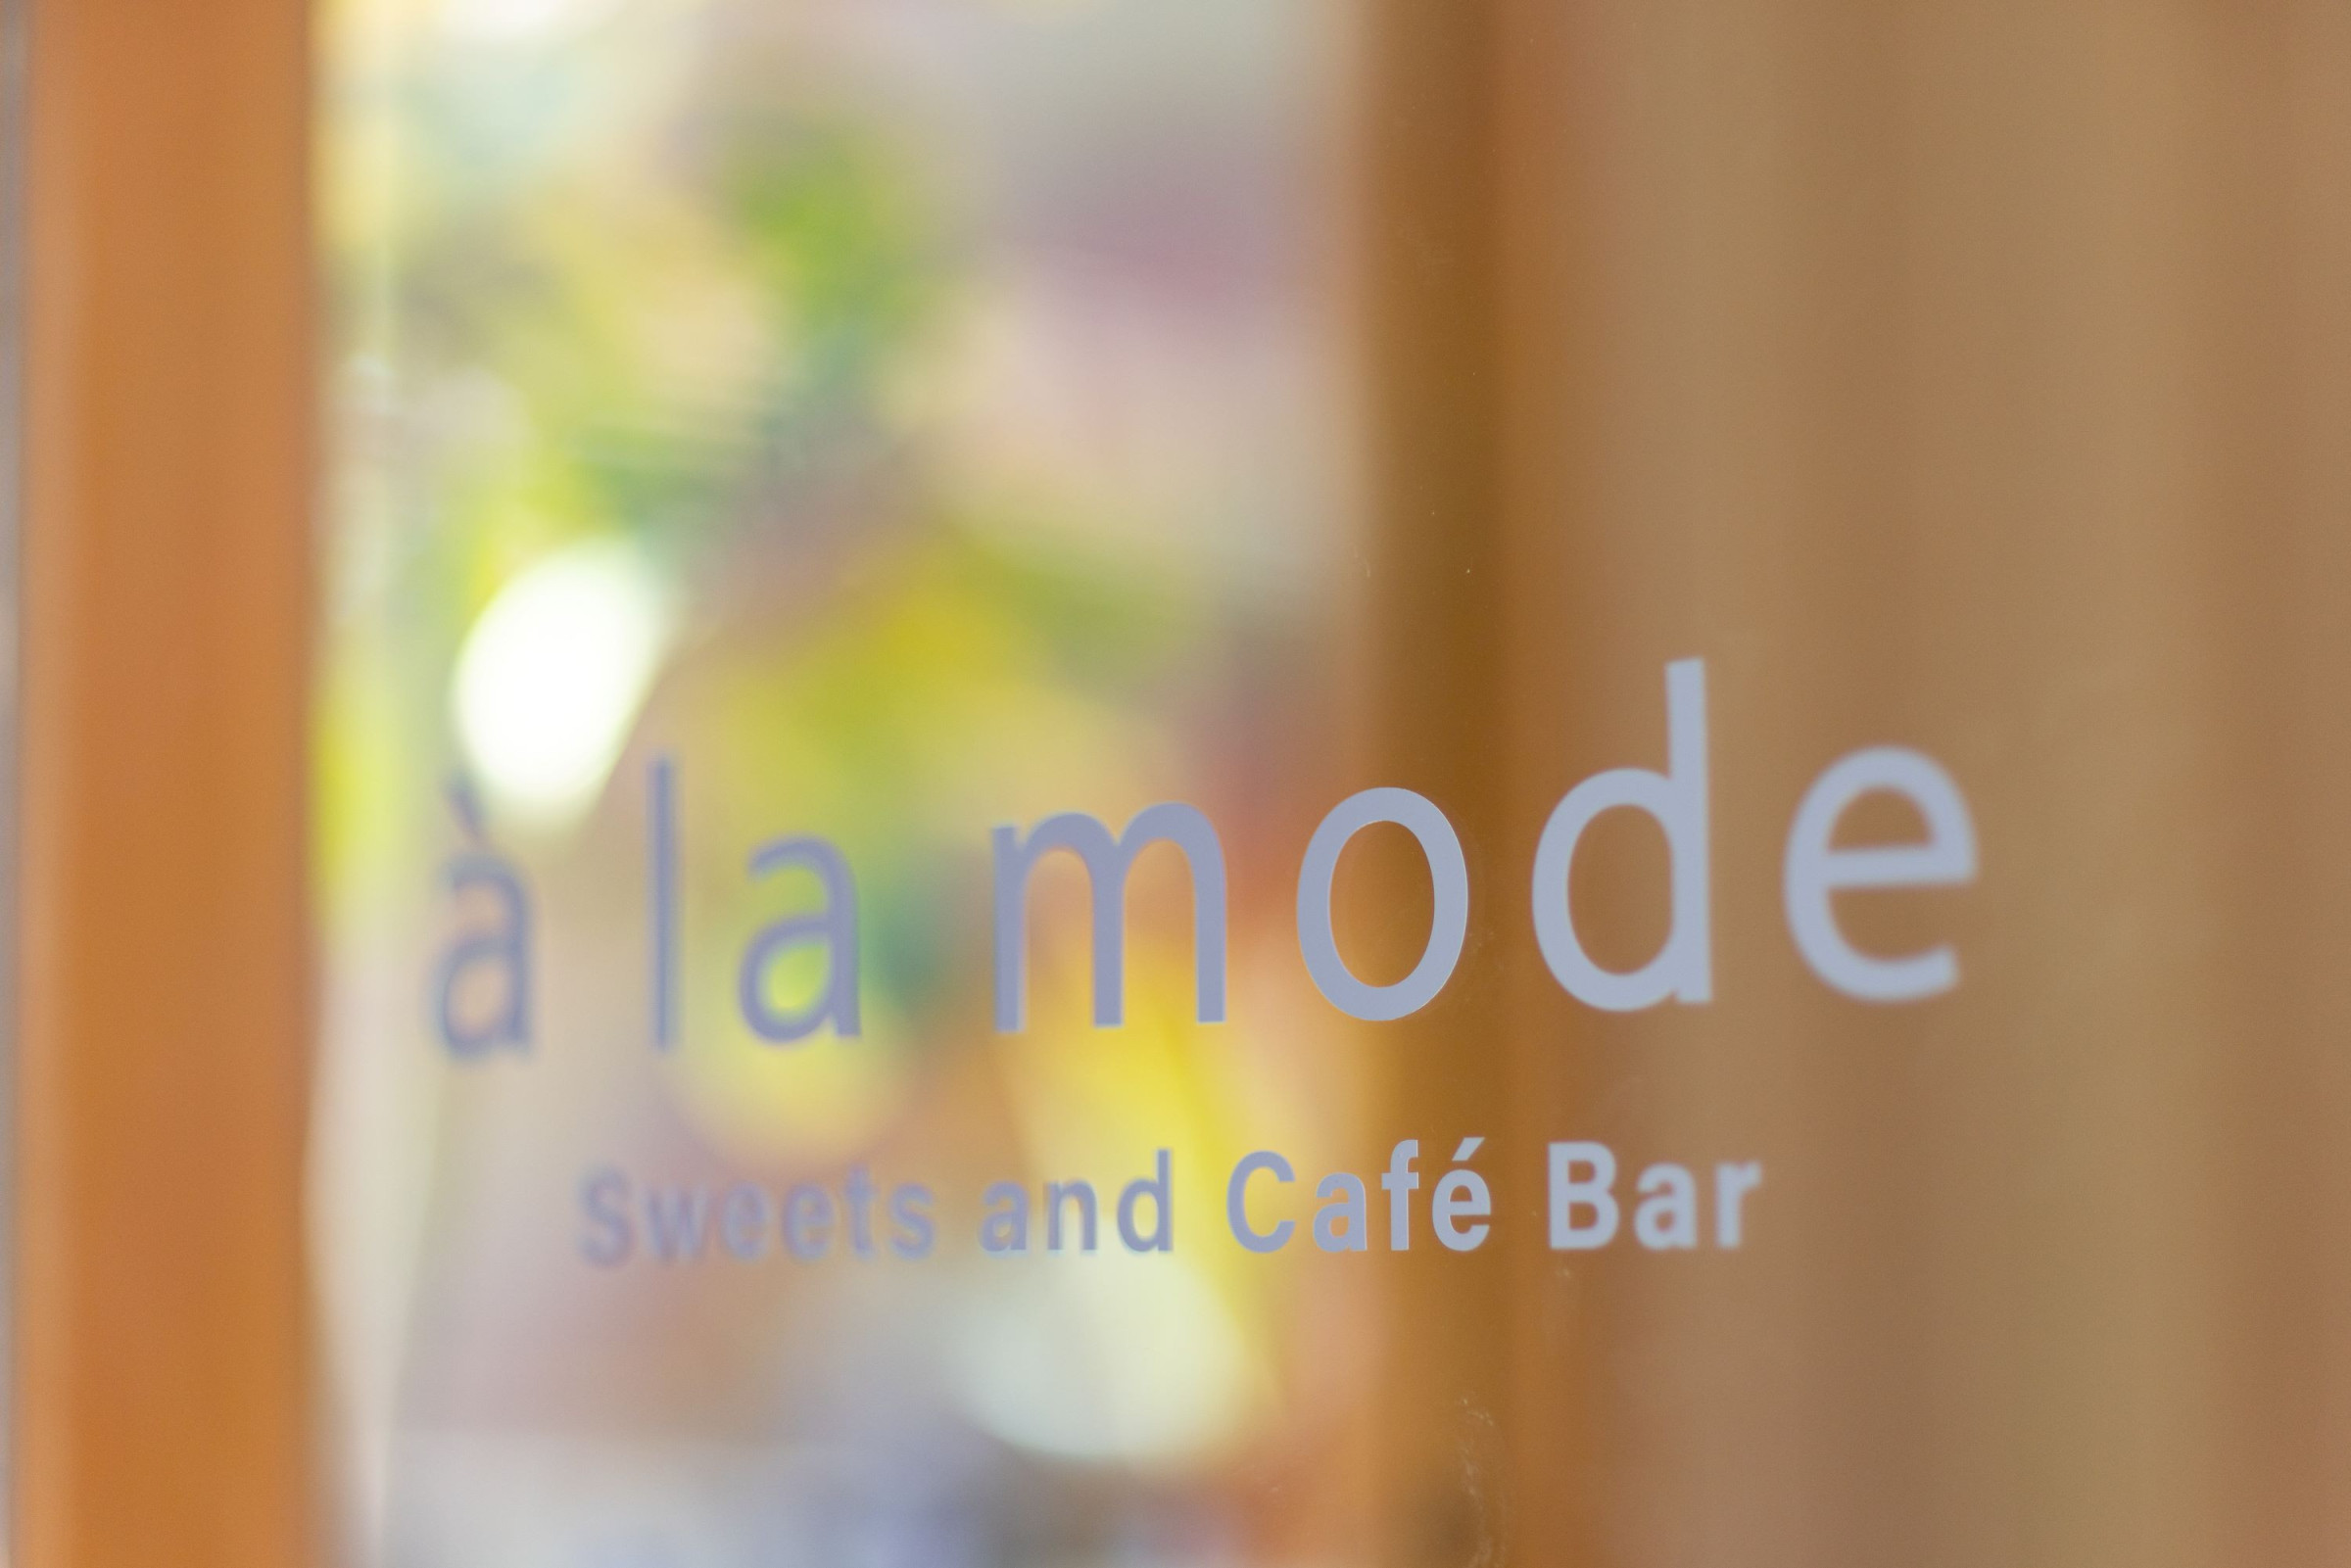 Sweets and Café Bar à la mode